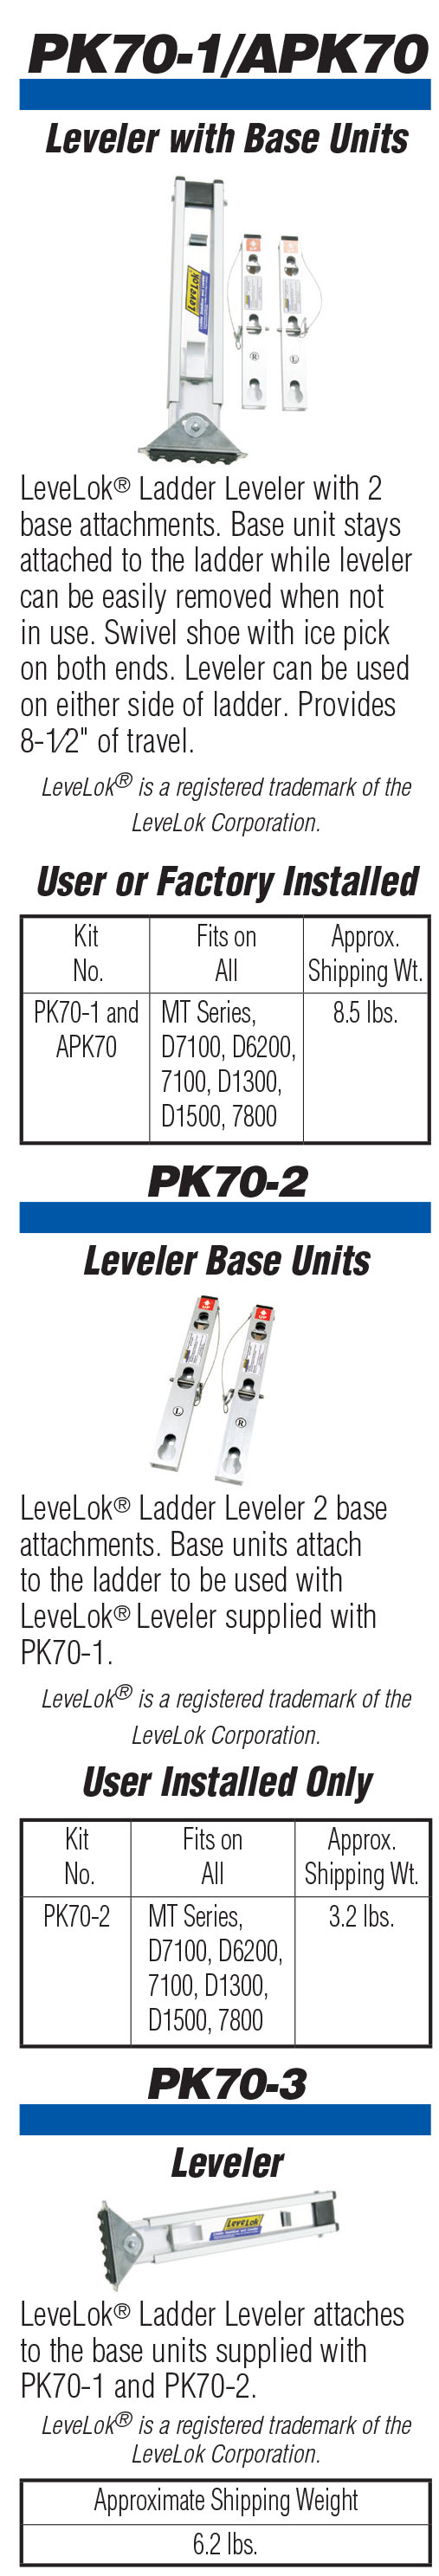 pk-70-leveler-catalog-page.jpg